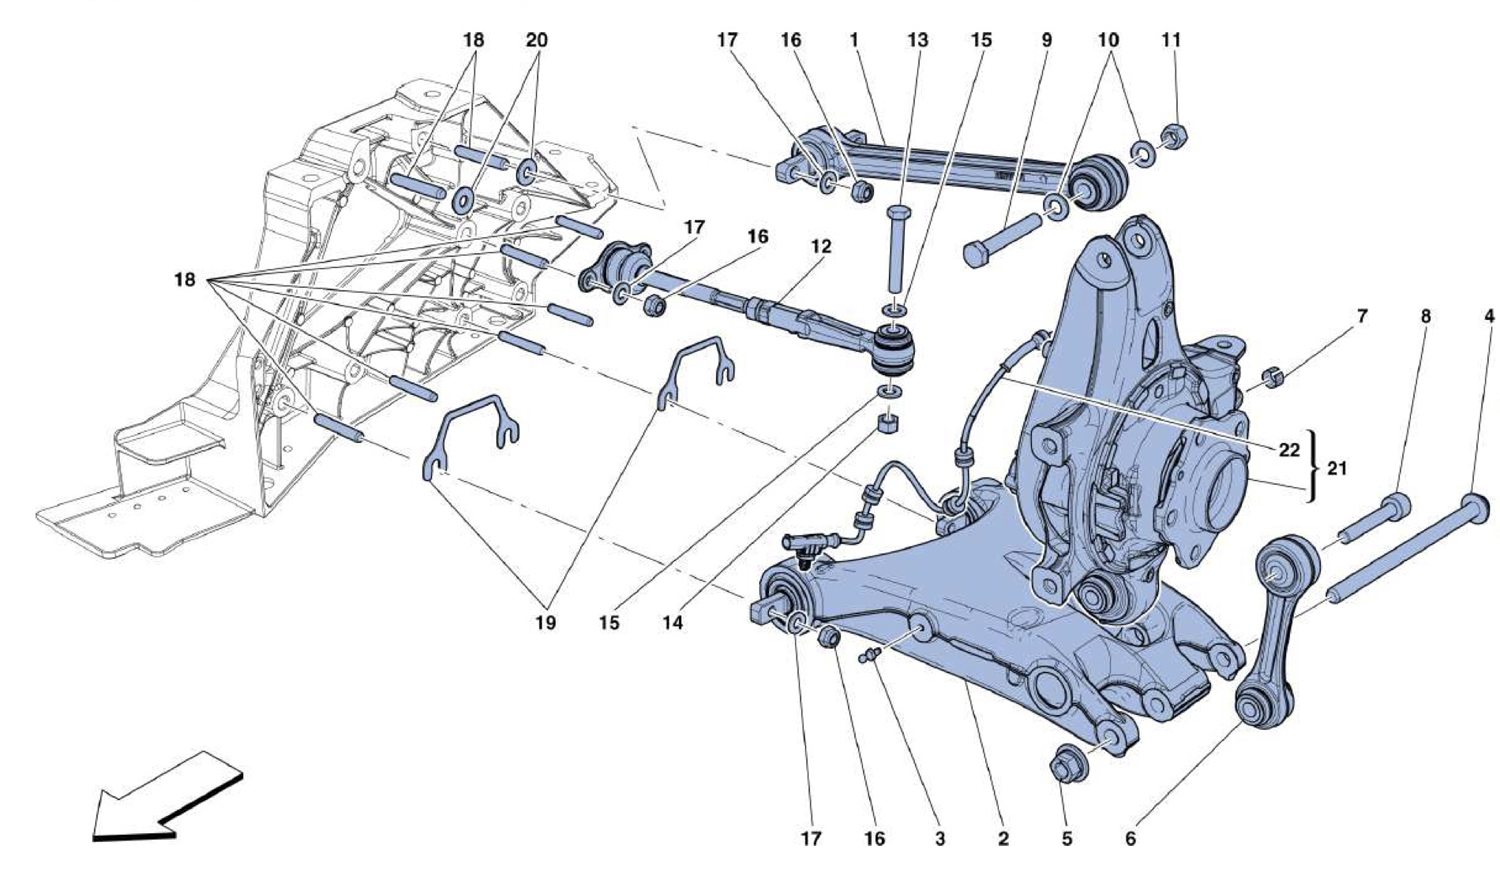 Schematic: Rear Suspension - Arms